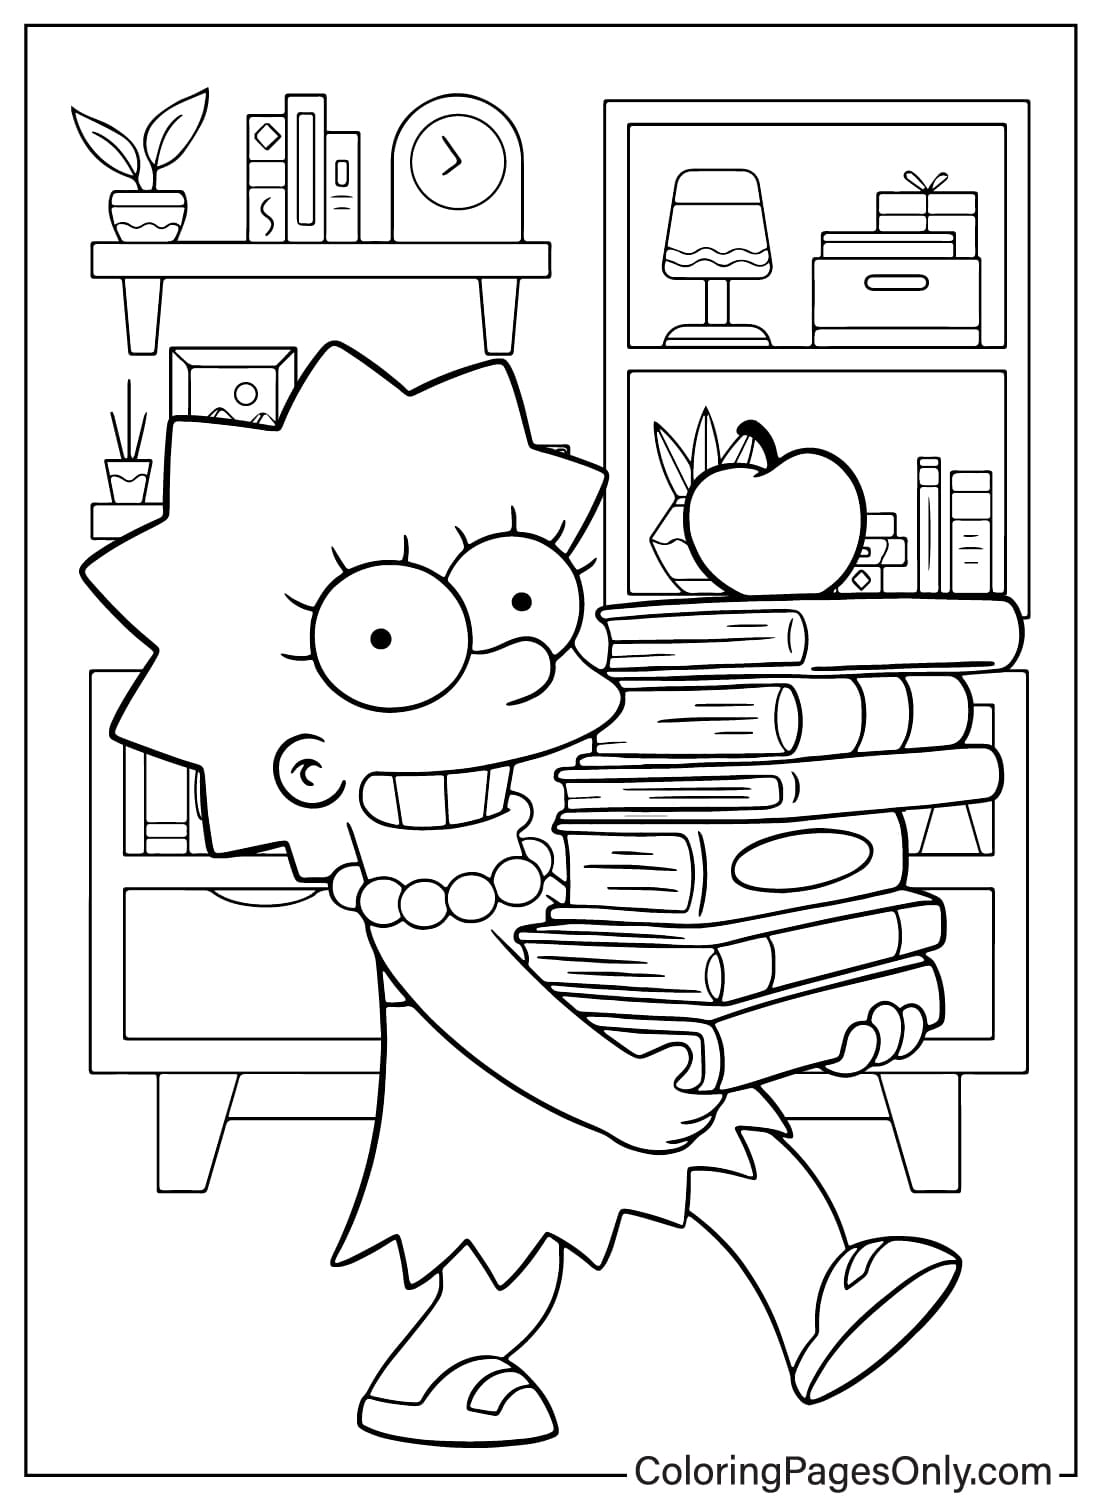 Página para colorir de Lisa para imprimir dos Simpsons